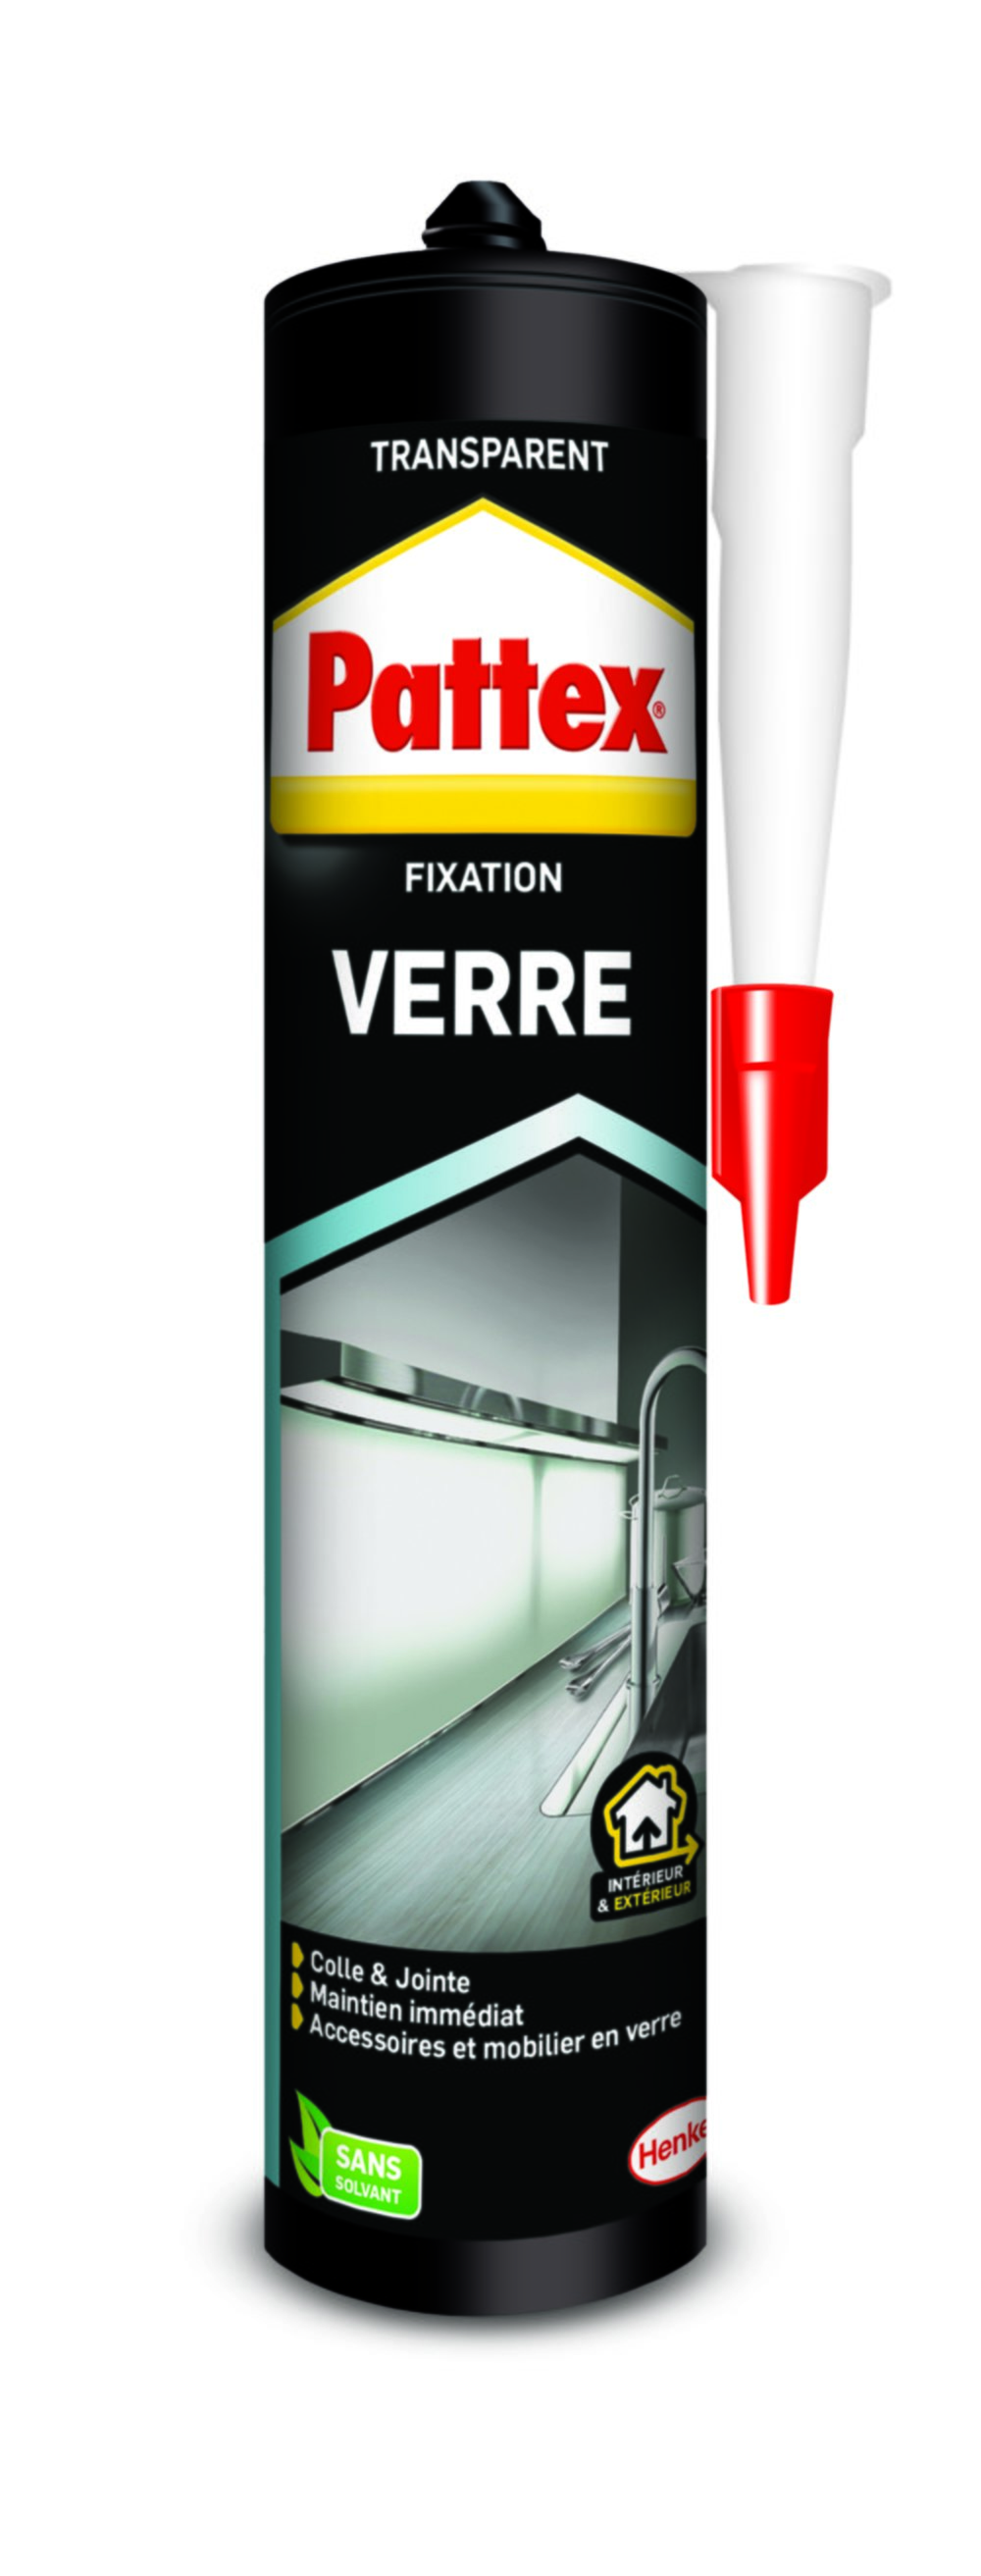 Colle Fixation Verre , mastic de fixation pour éléments transparents, colle et jointe 300g - PATTEX 